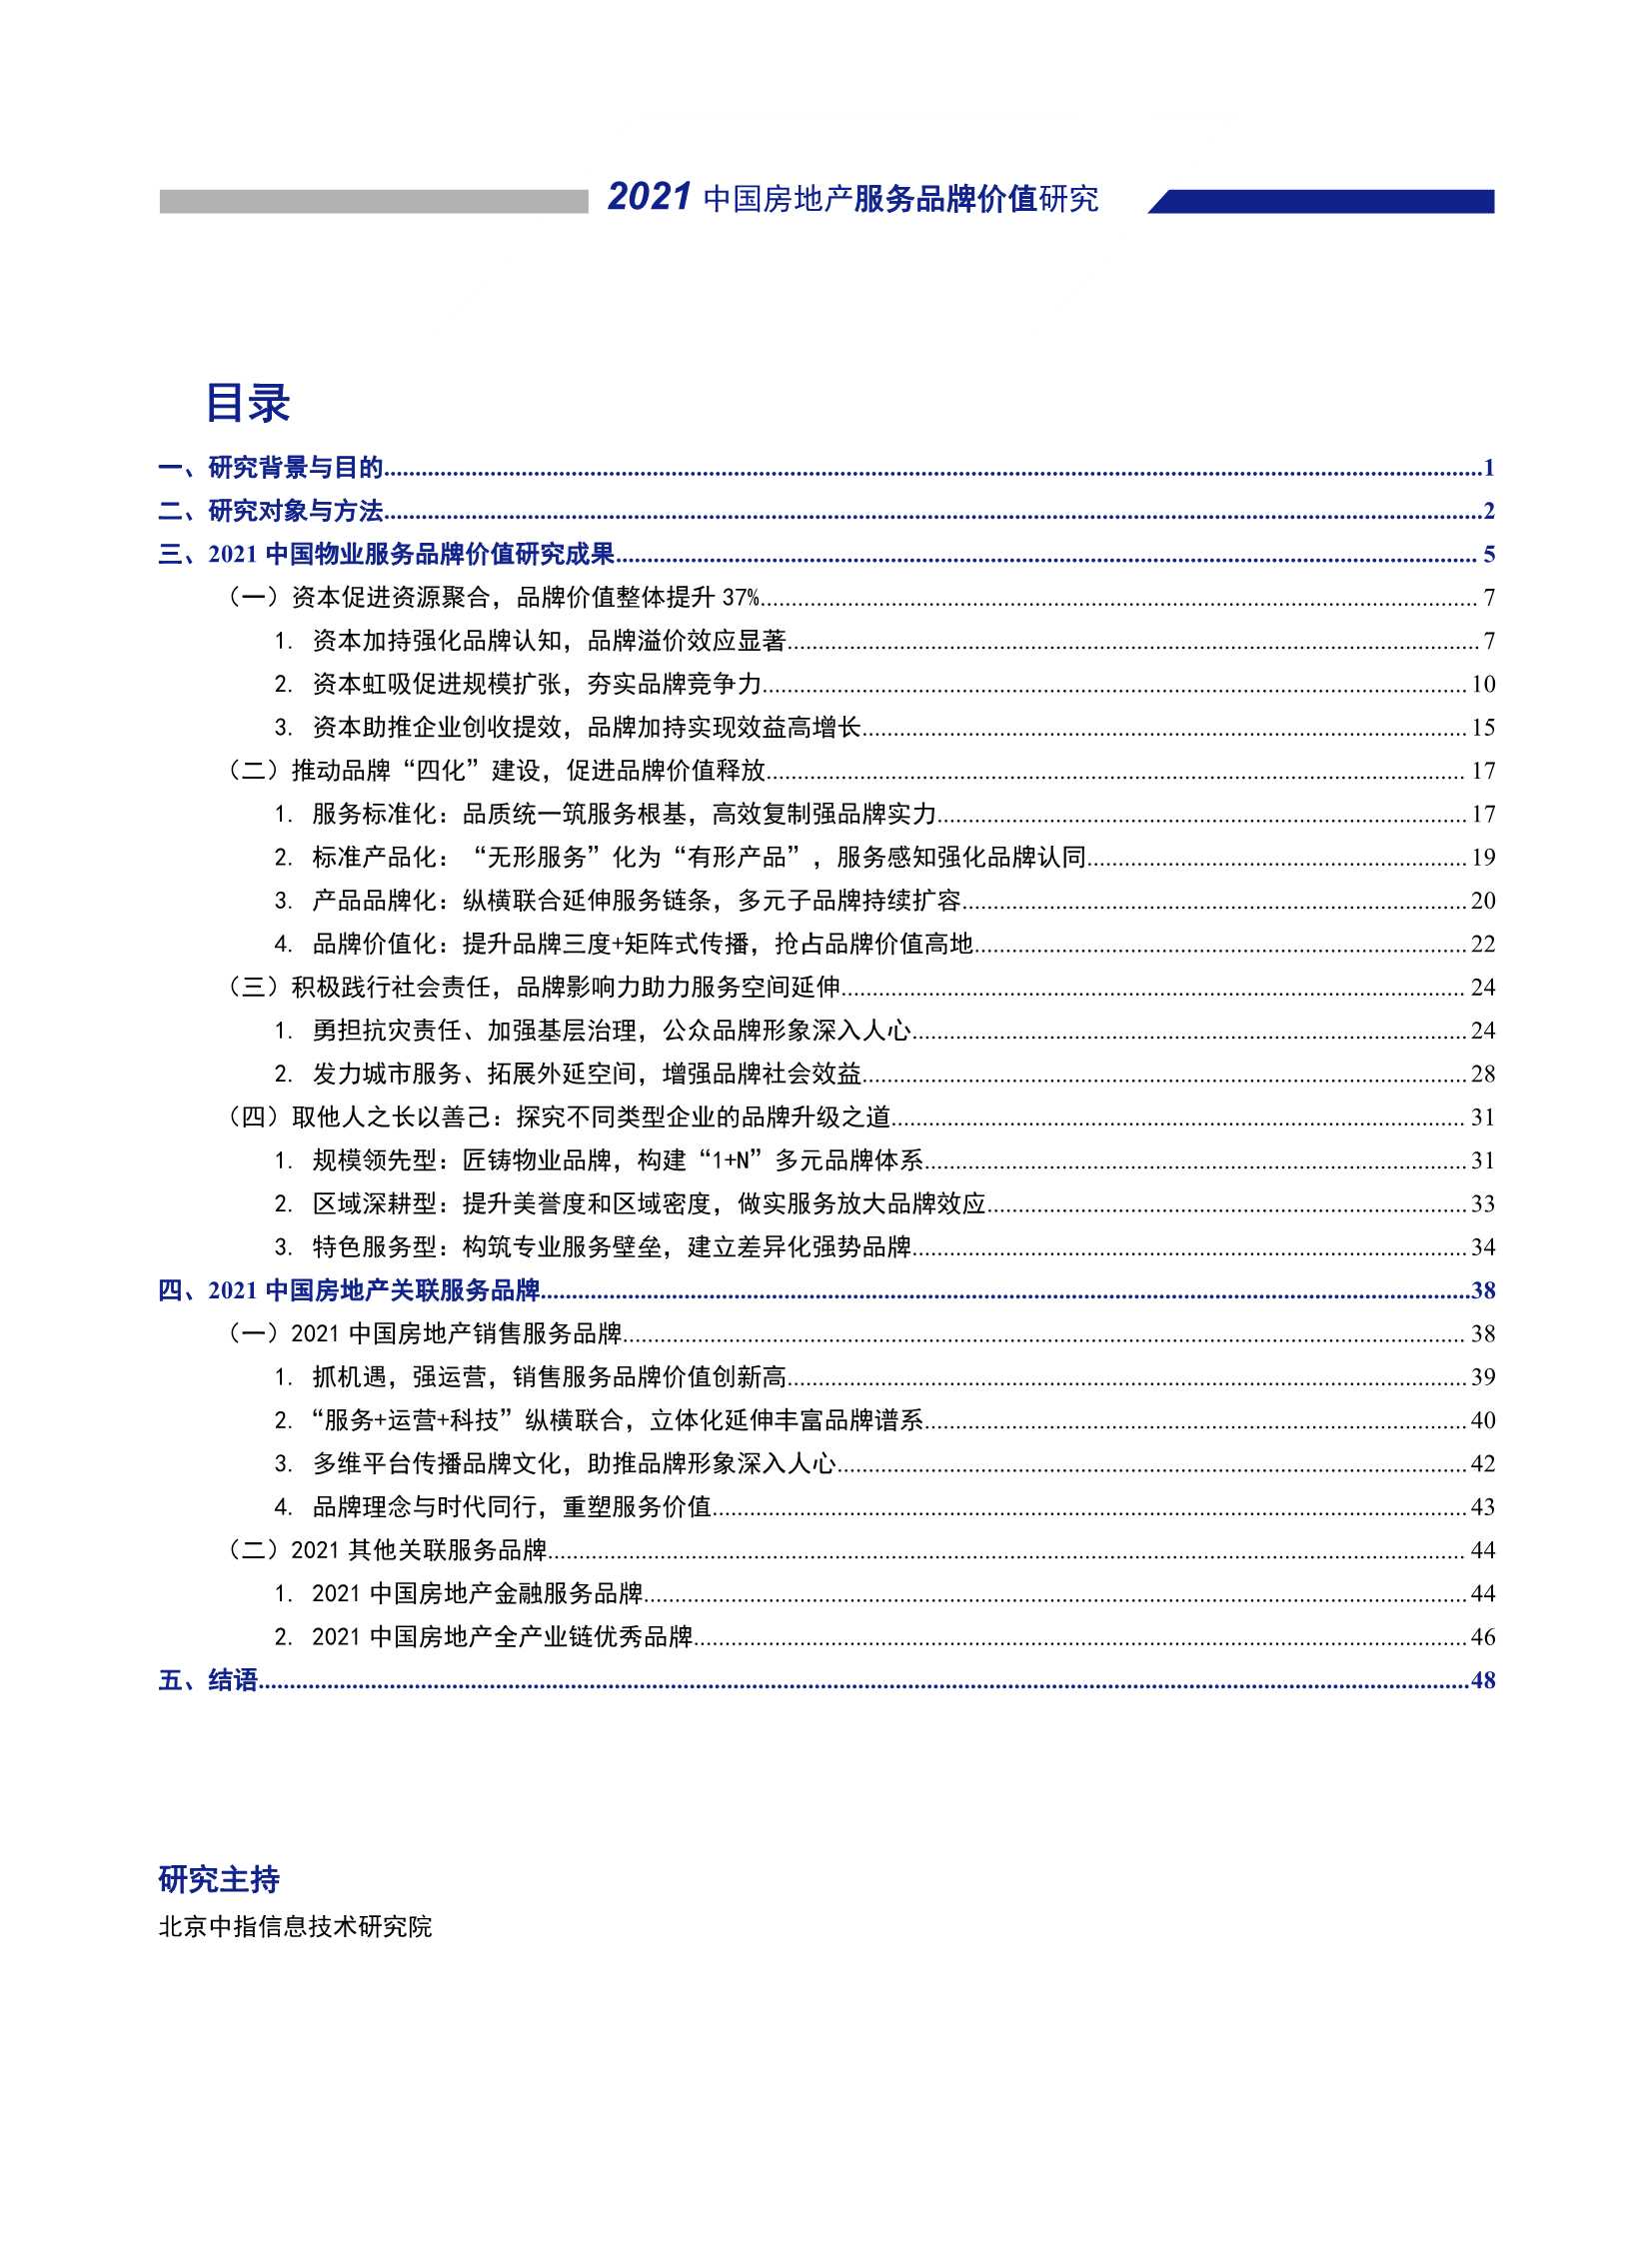 2021中国物业服务品牌价值研究成果报告-2021.09-50页